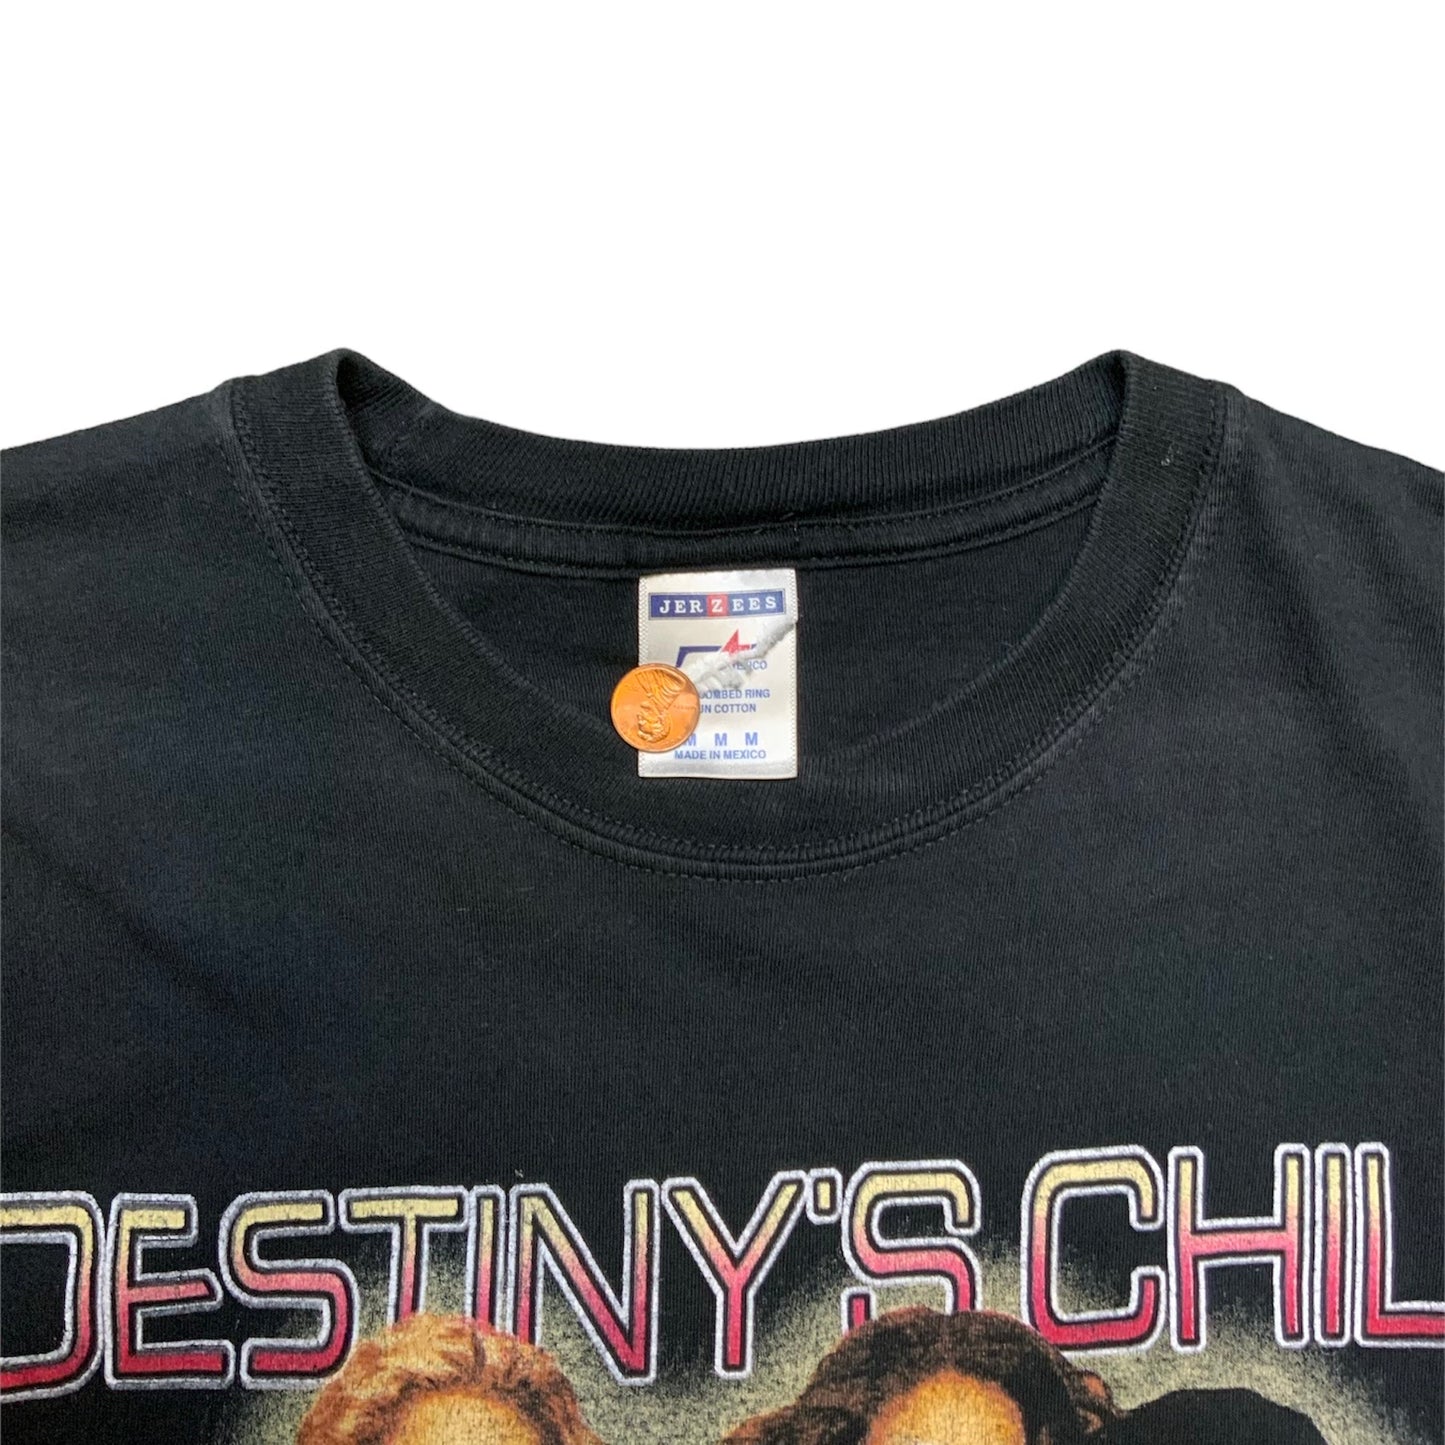 2005 Destiny’s Child Tour T-Shirt